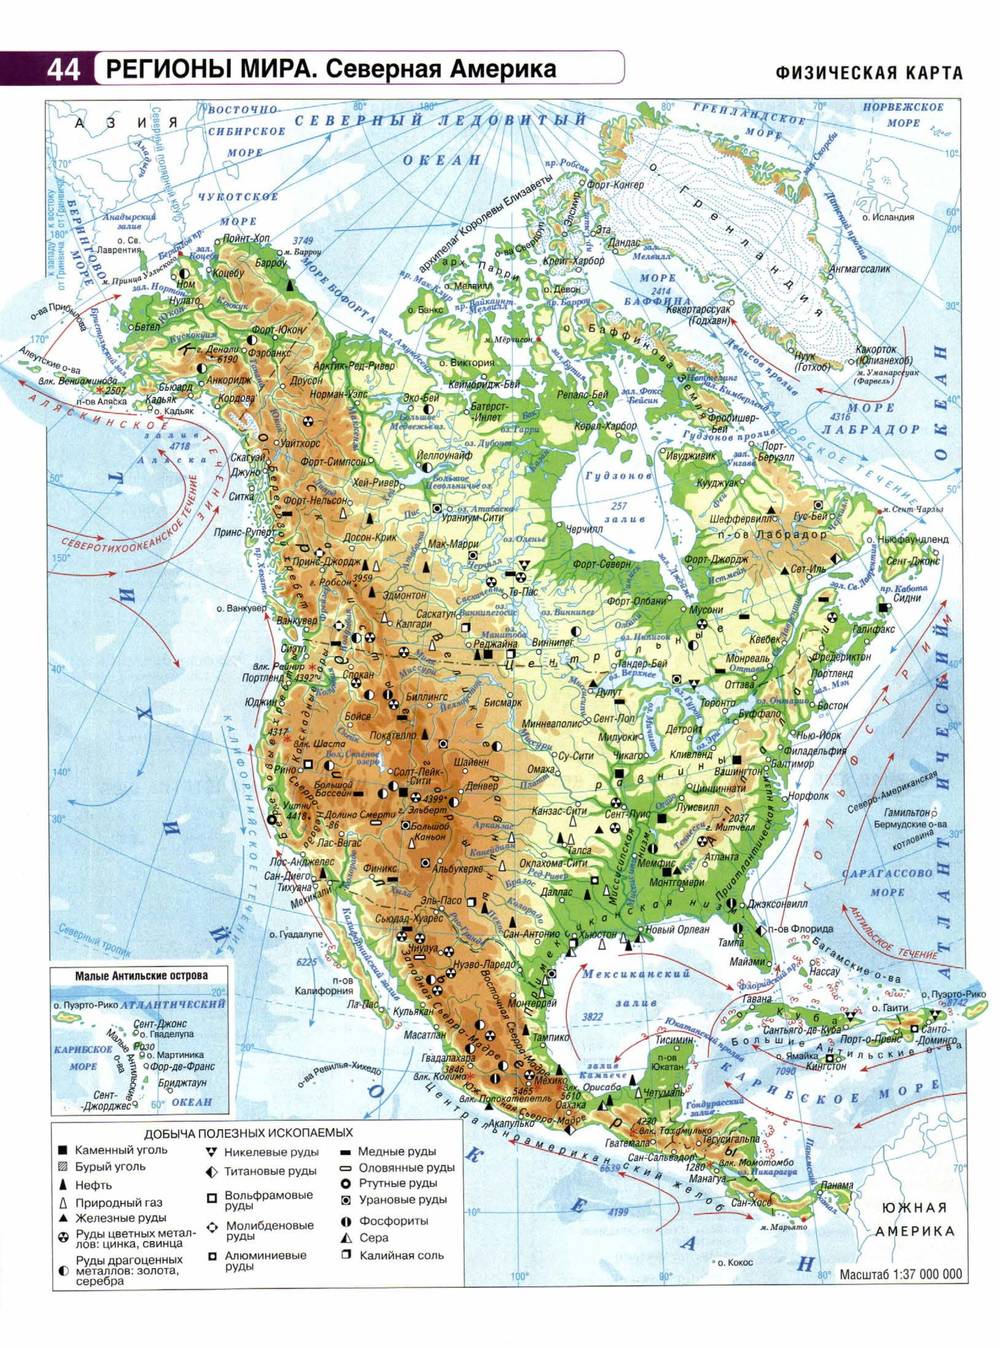 Северная америка какая платформа. Физическая карта Северной Америки 7 класс атлас. Северная Америка на карте физическая карта. Физическая карта Северной Америки атлас. Физико-географическая карта Северной Америки.